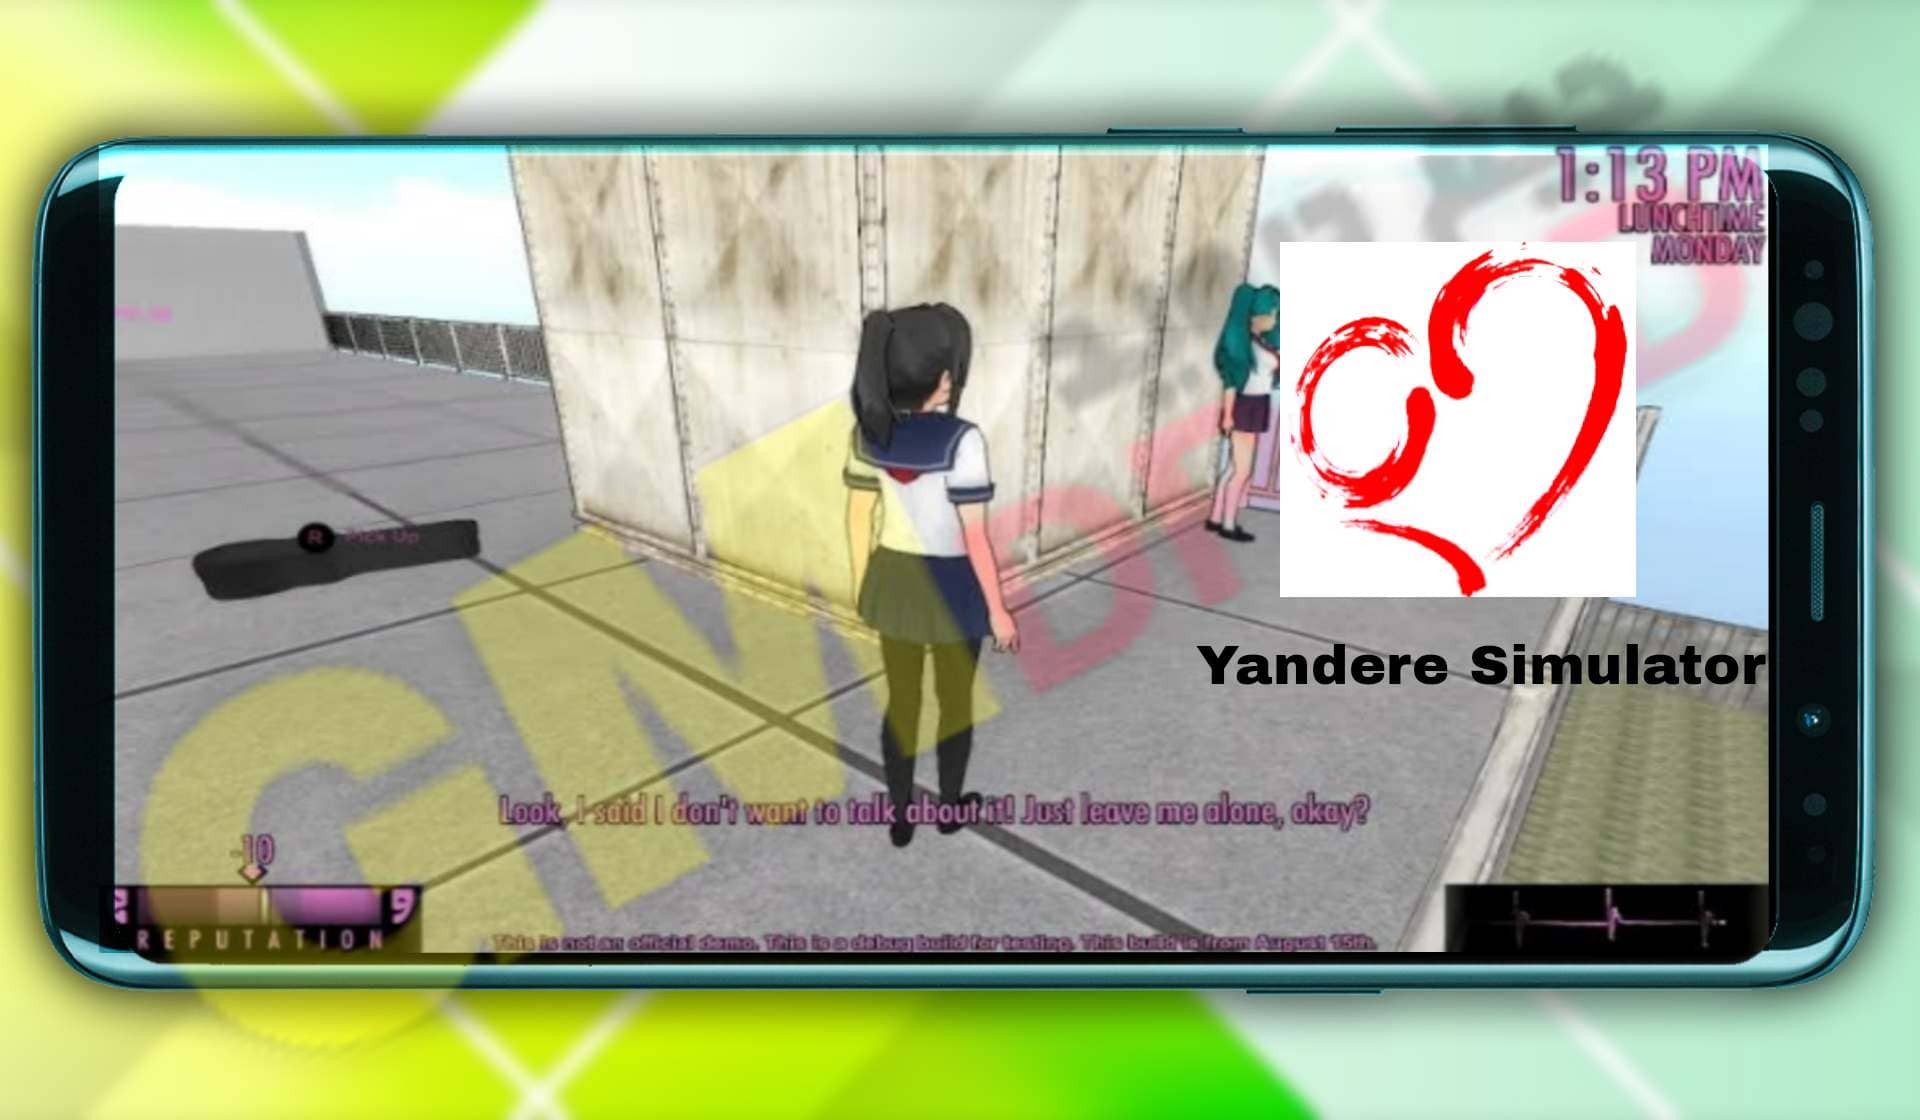 تحميل لعبة يانديري سمليتر للجوال yandere simulator apk مهكرة للايفون والاندرويد من ميديا فاير